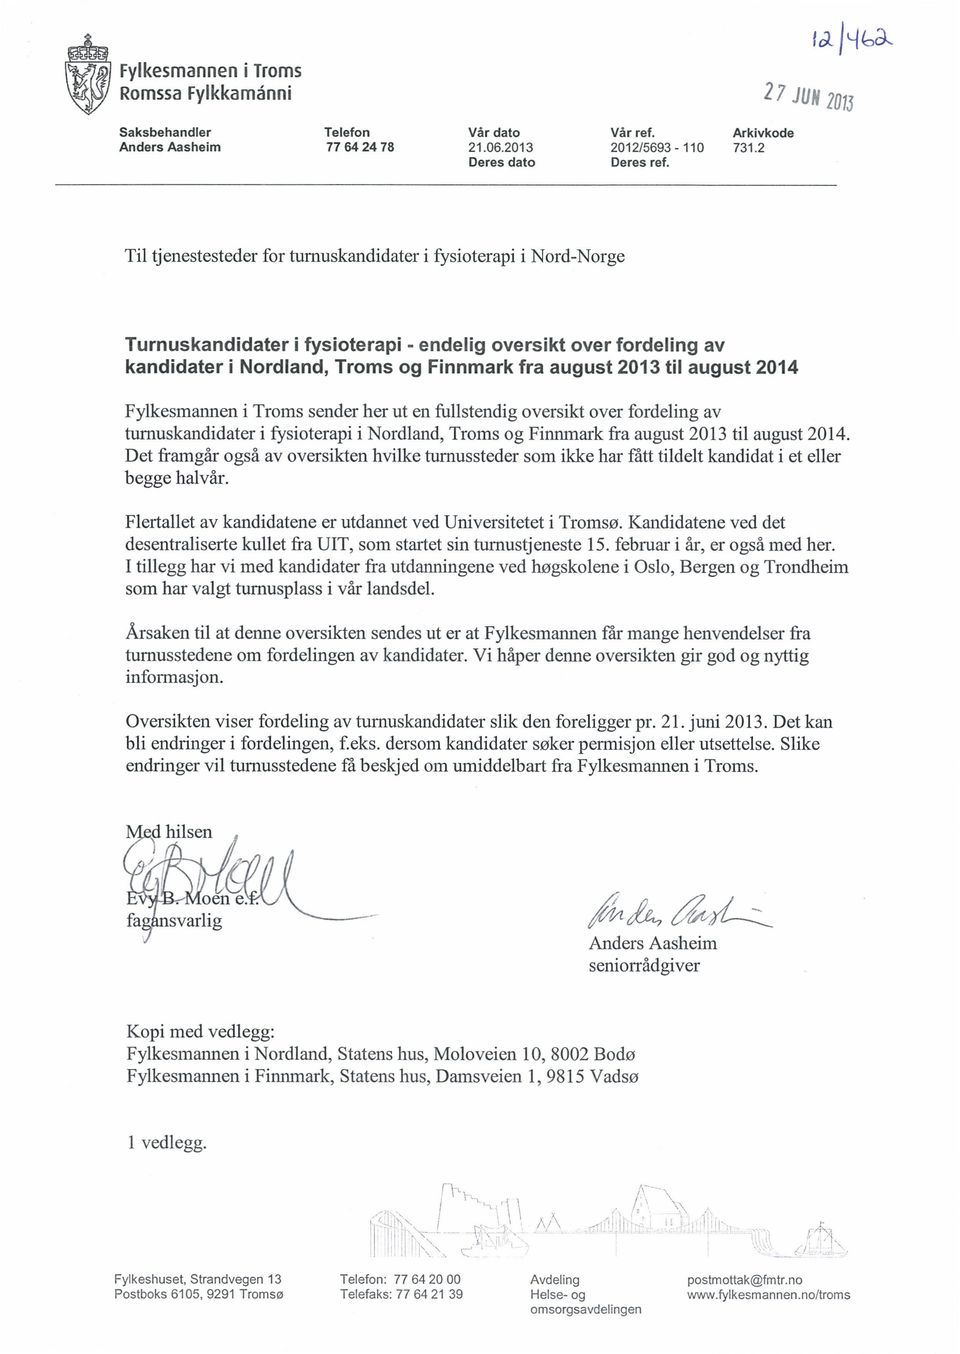 august 2014 Fylkesmannen i Troms sender her ut en fullstendig oversikt over fordeling av turnuskandidater i fysioterapi i Nordland, Troms og Finnmark fra august 2013 til august 2014.